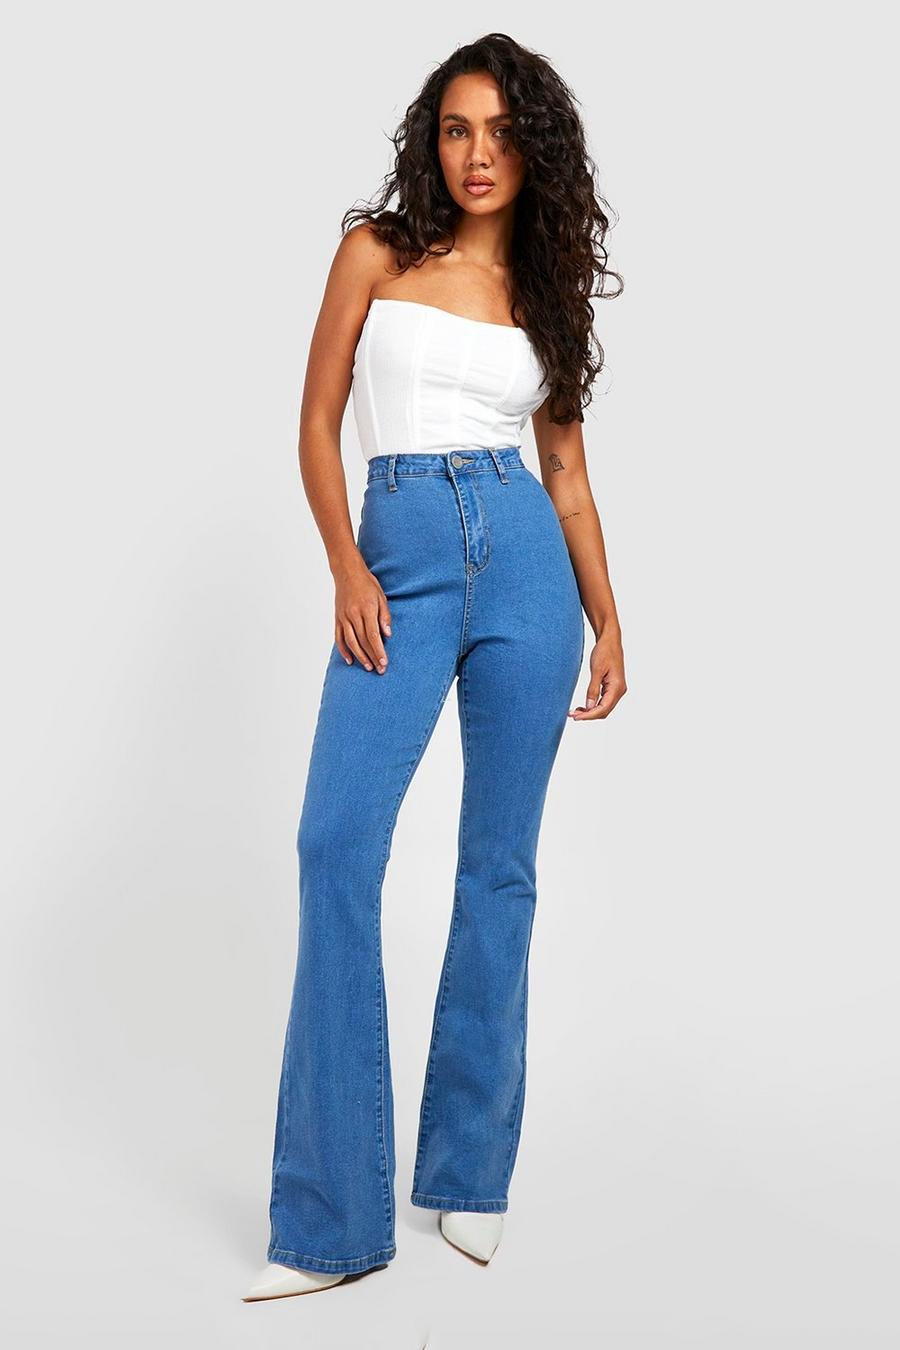 כחול ביניים azzurro ג'ינס בייסיק high waist מתרחב בסגנון דיסקו